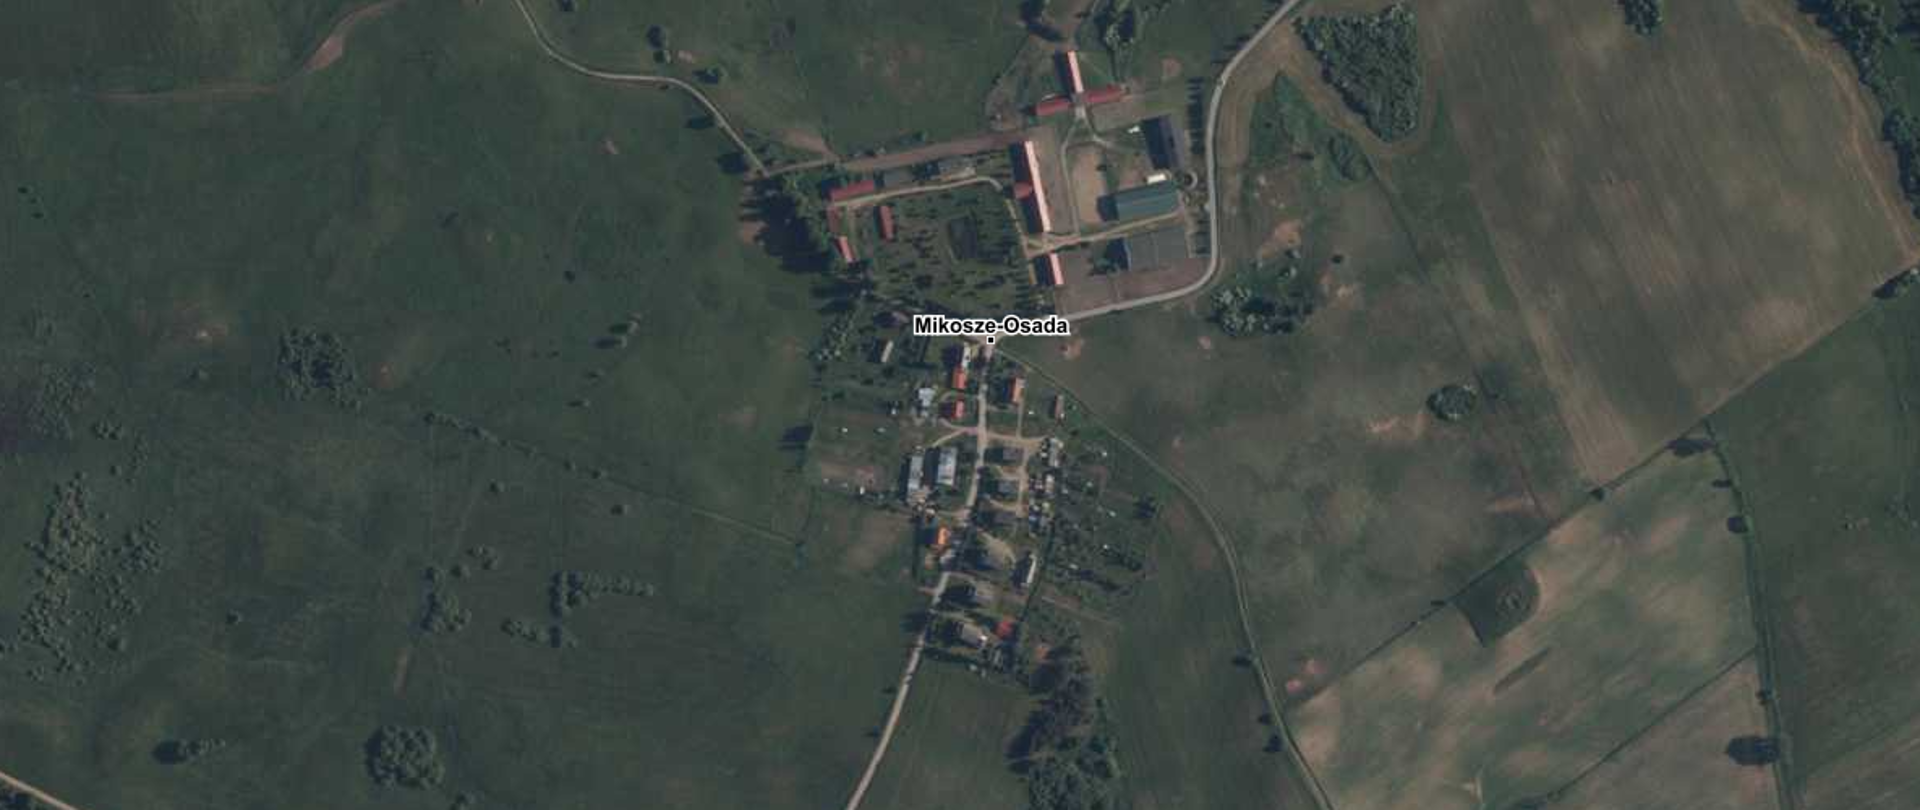 Ilustracja przedstawiająca zrzut ekranu z serwisu www.geoportal.gov.pl z zaznaczoną na podkładzie ortofotomapy lokalizacją urzędowej nazwy miejscowości Mikosze-Osada, wieś.